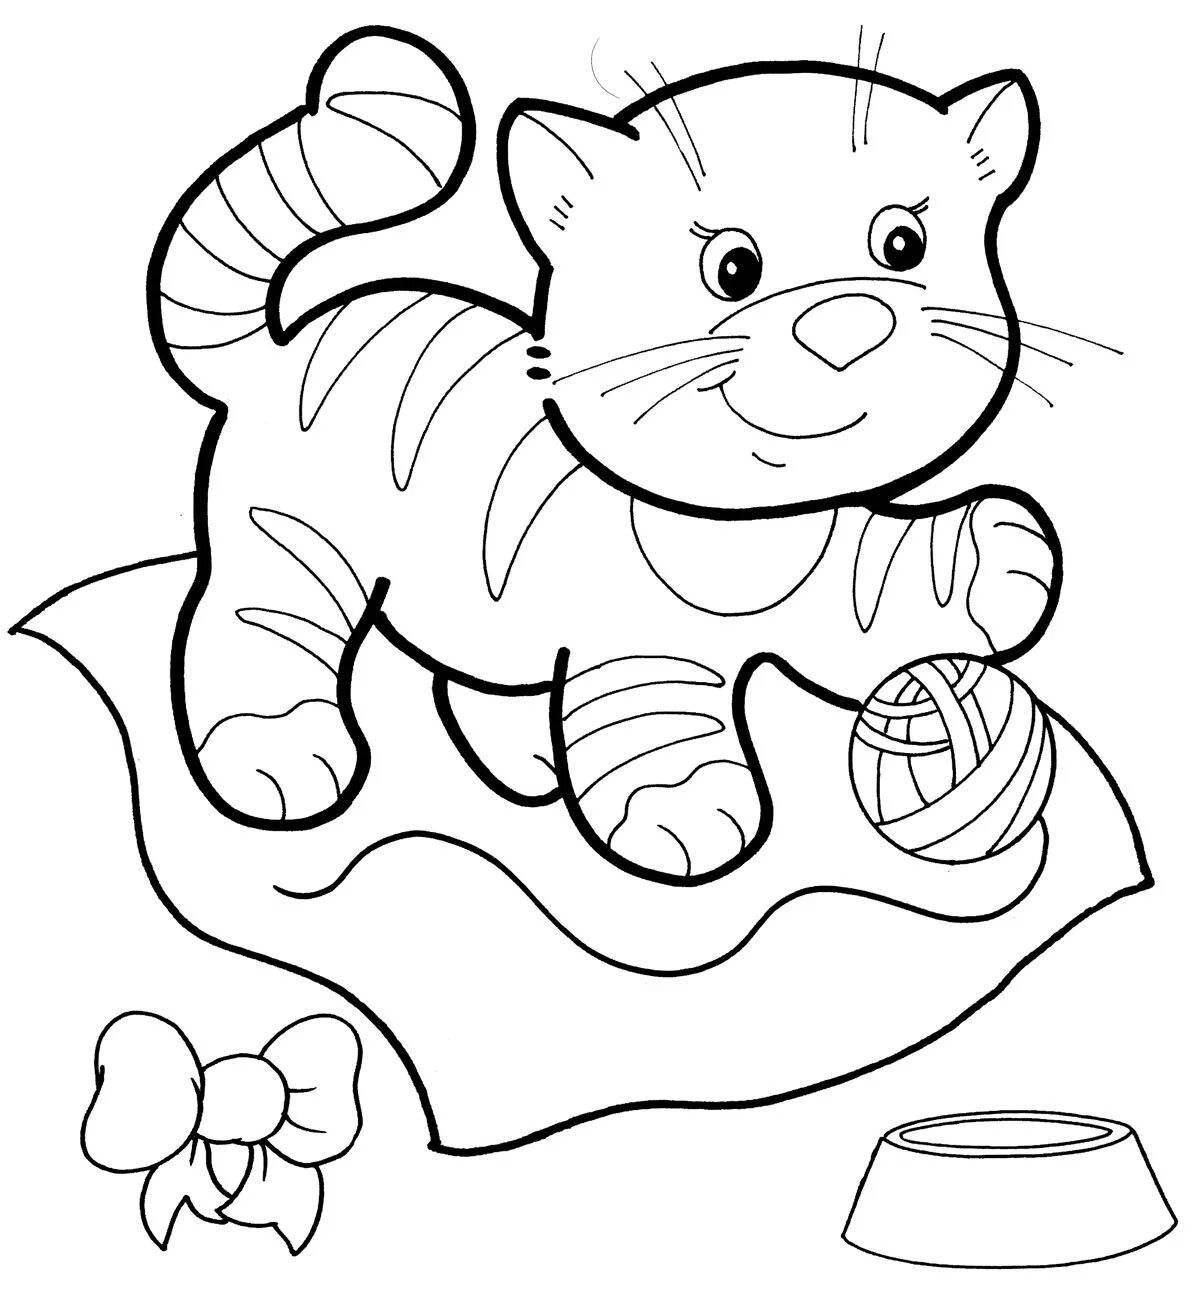 Креативная раскраска для детей 5-6 лет кошки